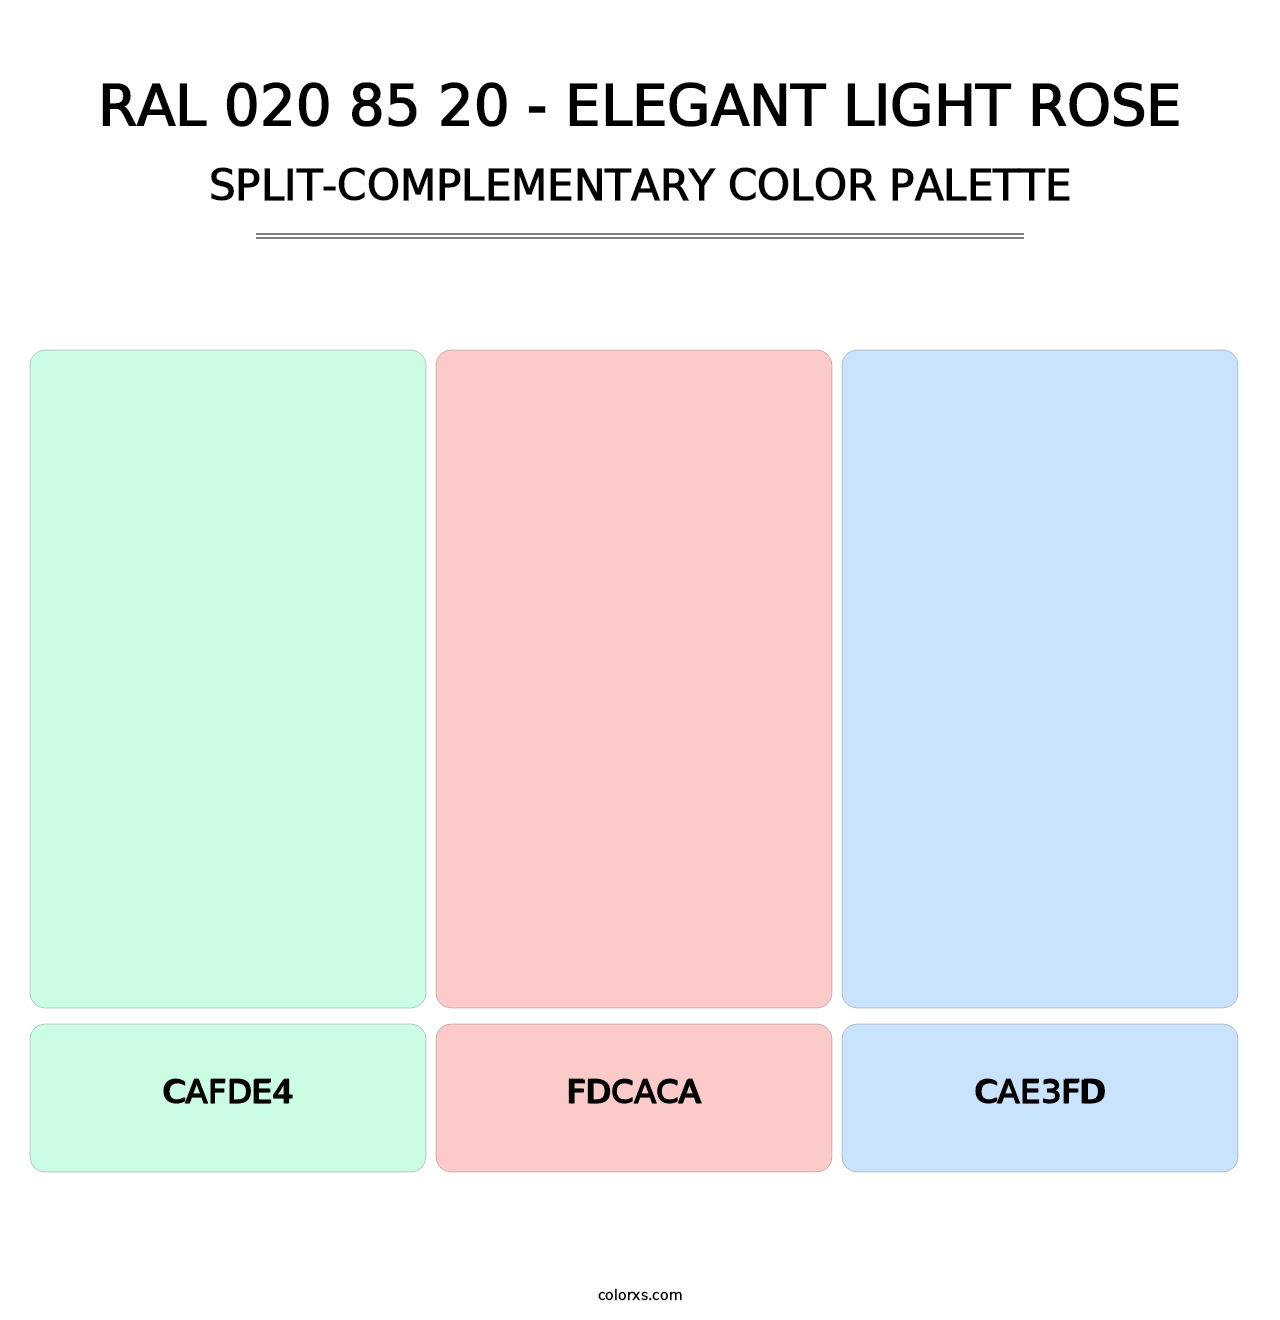 RAL 020 85 20 - Elegant Light Rose - Split-Complementary Color Palette